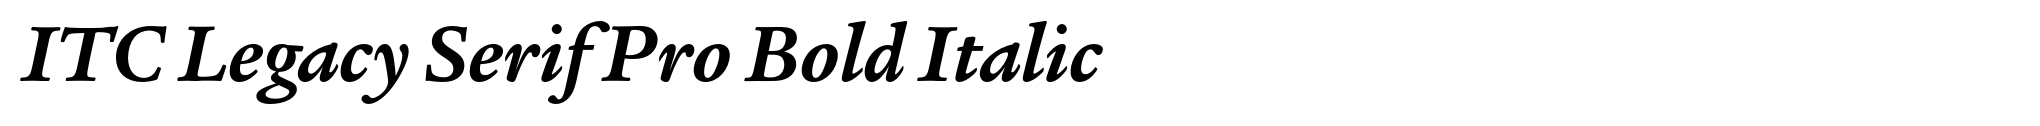 ITC Legacy Serif Pro Bold Italic image